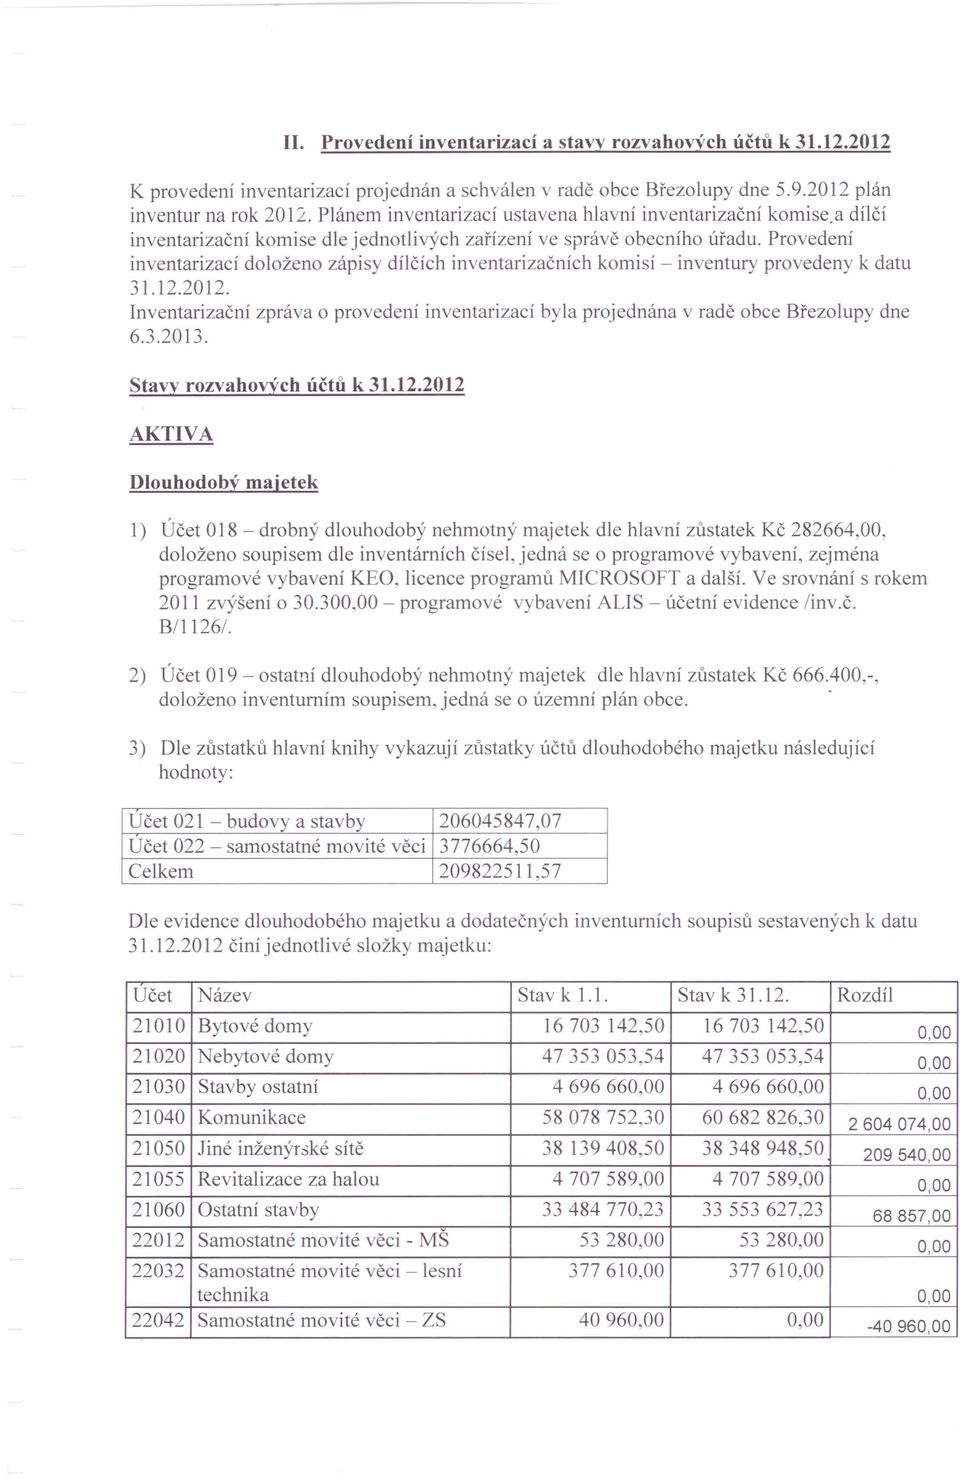 Provedení inventarizací doloženo zápisy dílčích inventarizačních komisí - inventury provedeny k datu 31.12.2012.